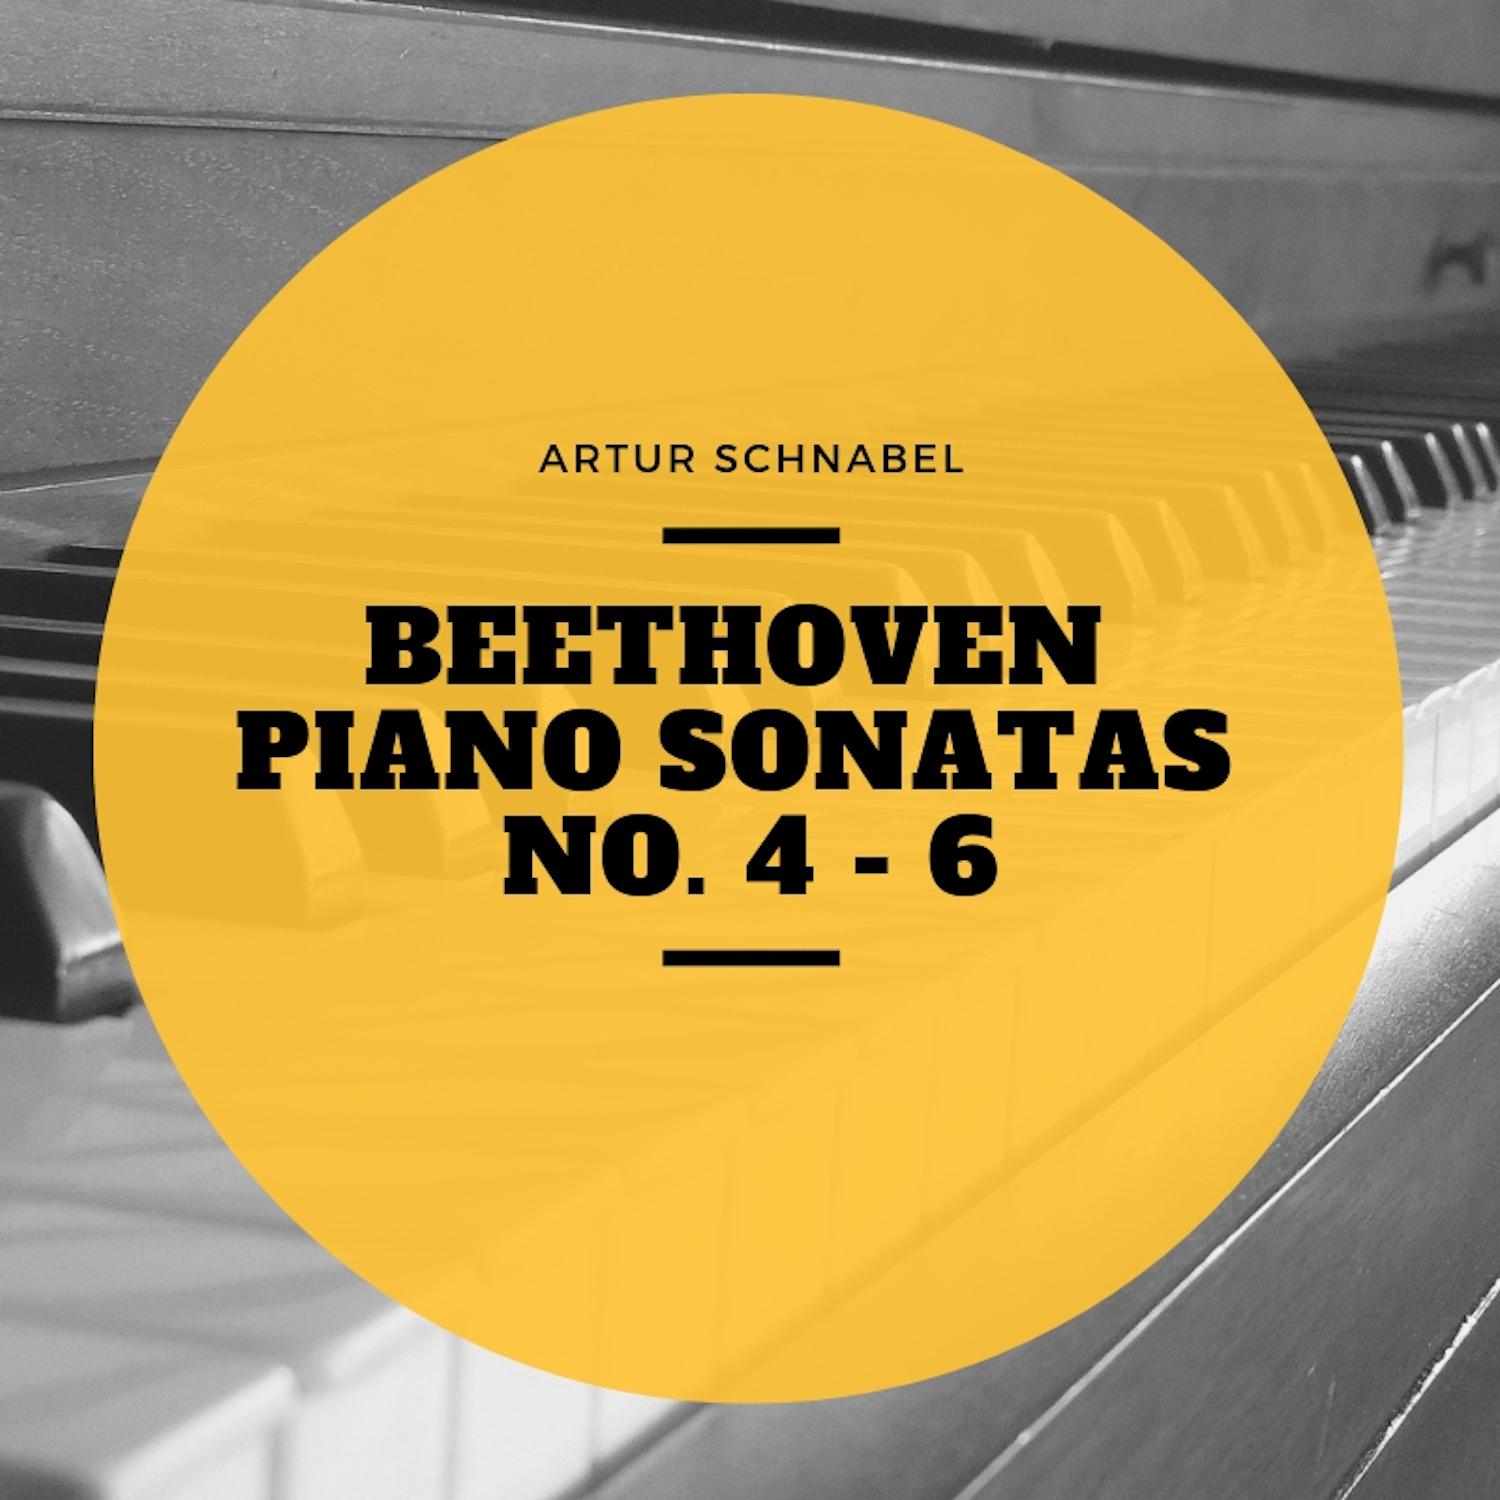 Piano Sonata No. 6, In F Major, Op. 10 No. 2: III. Scherzo: Presto